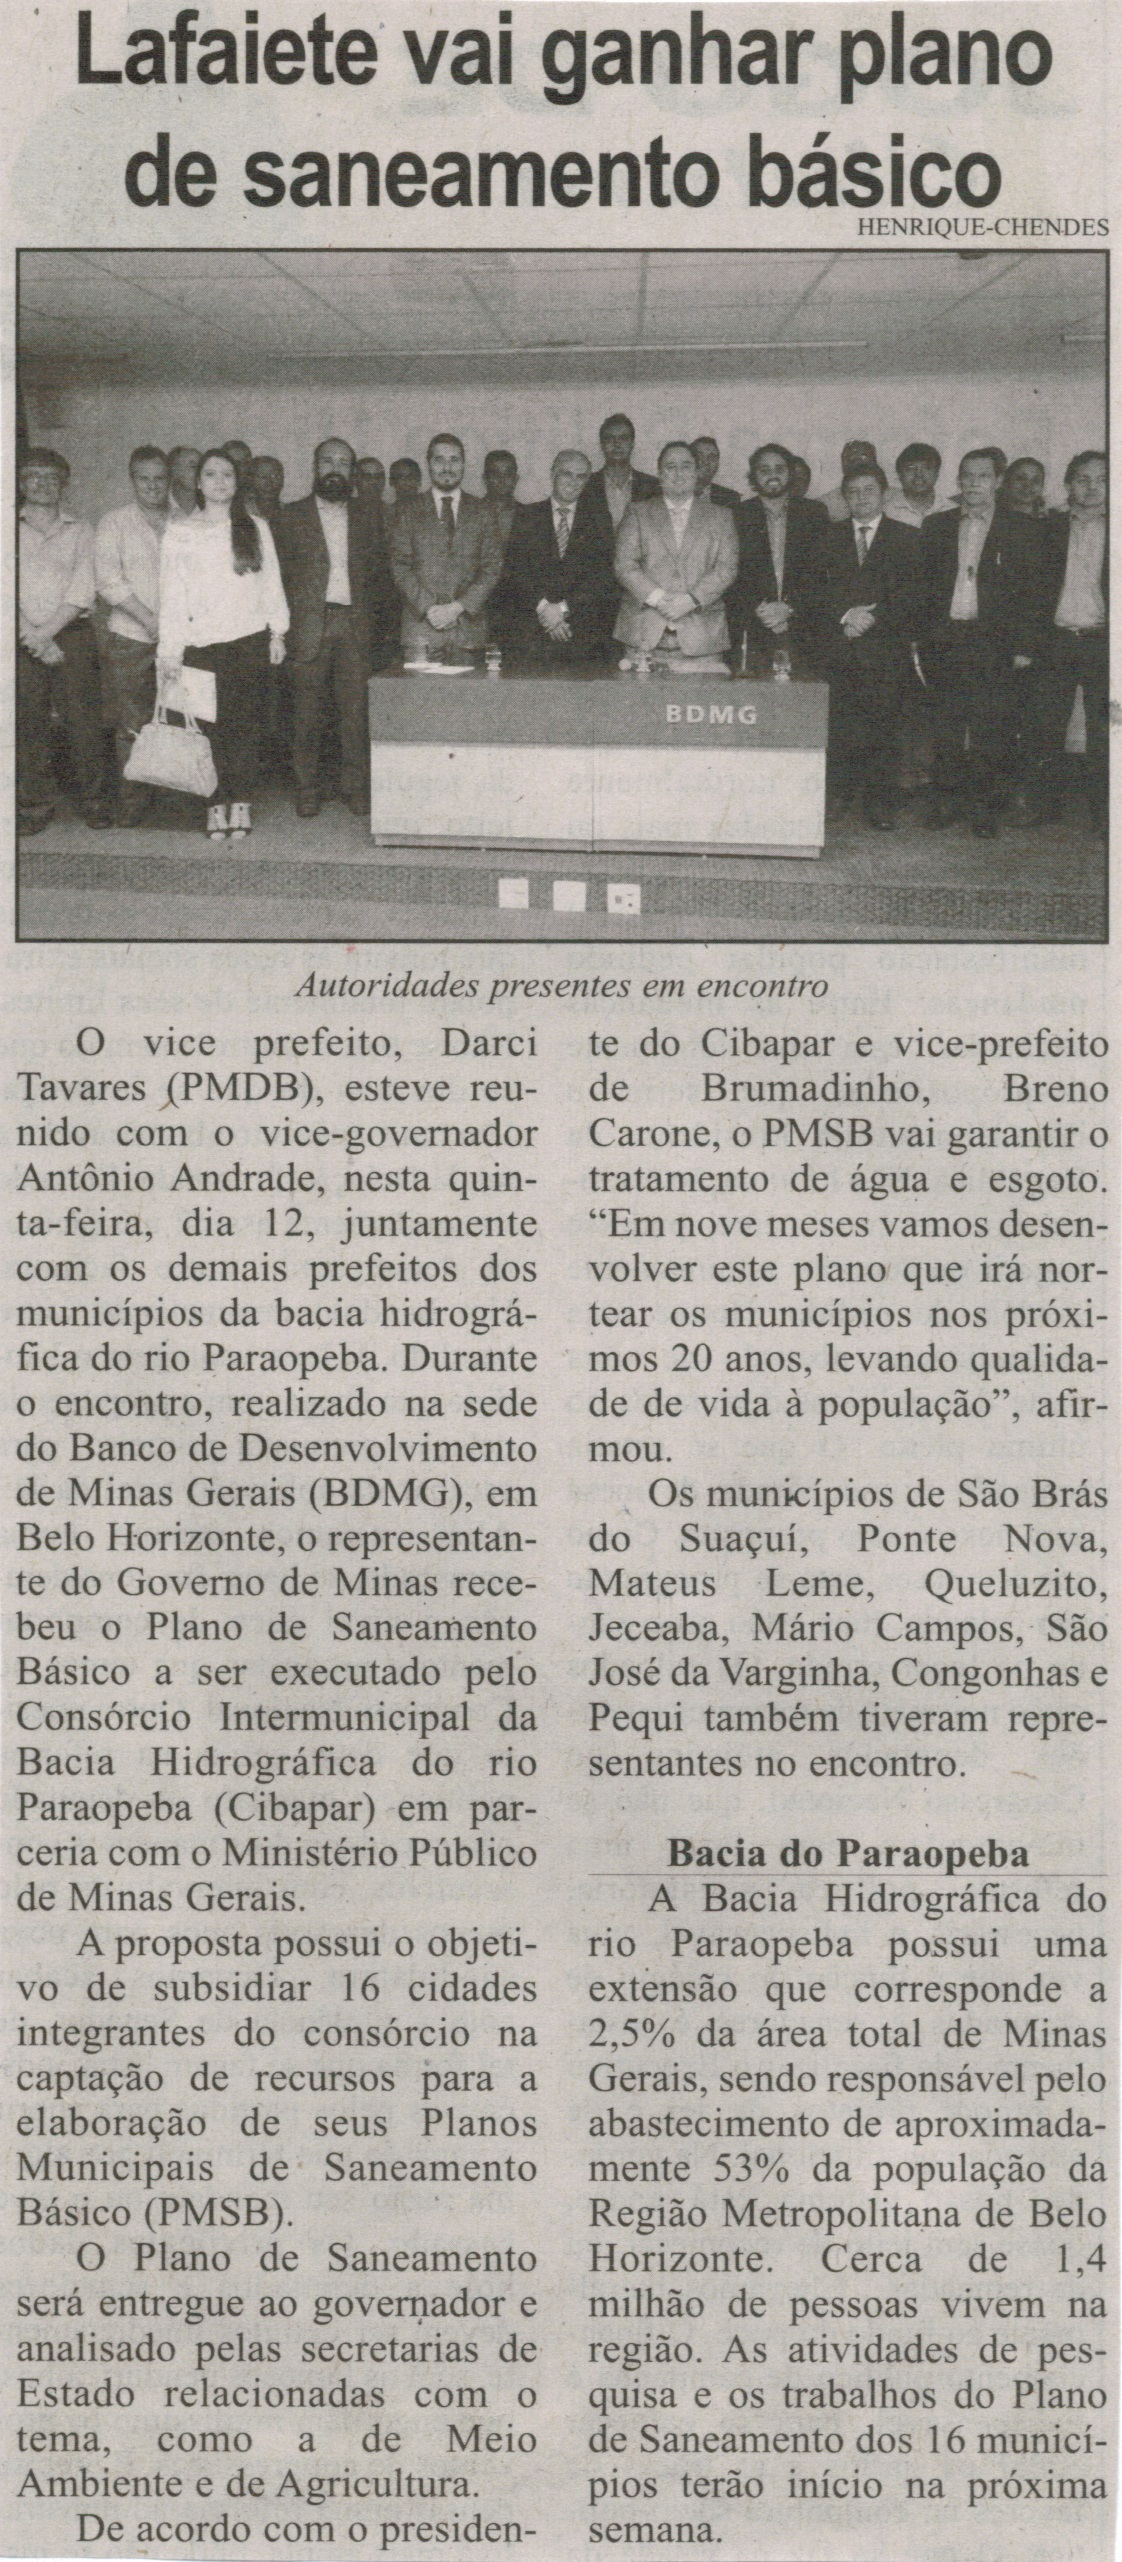 Lafaiete vai ganhar plano de saneamento básico. Correio de Minas, Conselheiro Lafaiete, 21 mar. 2015, p. 05.